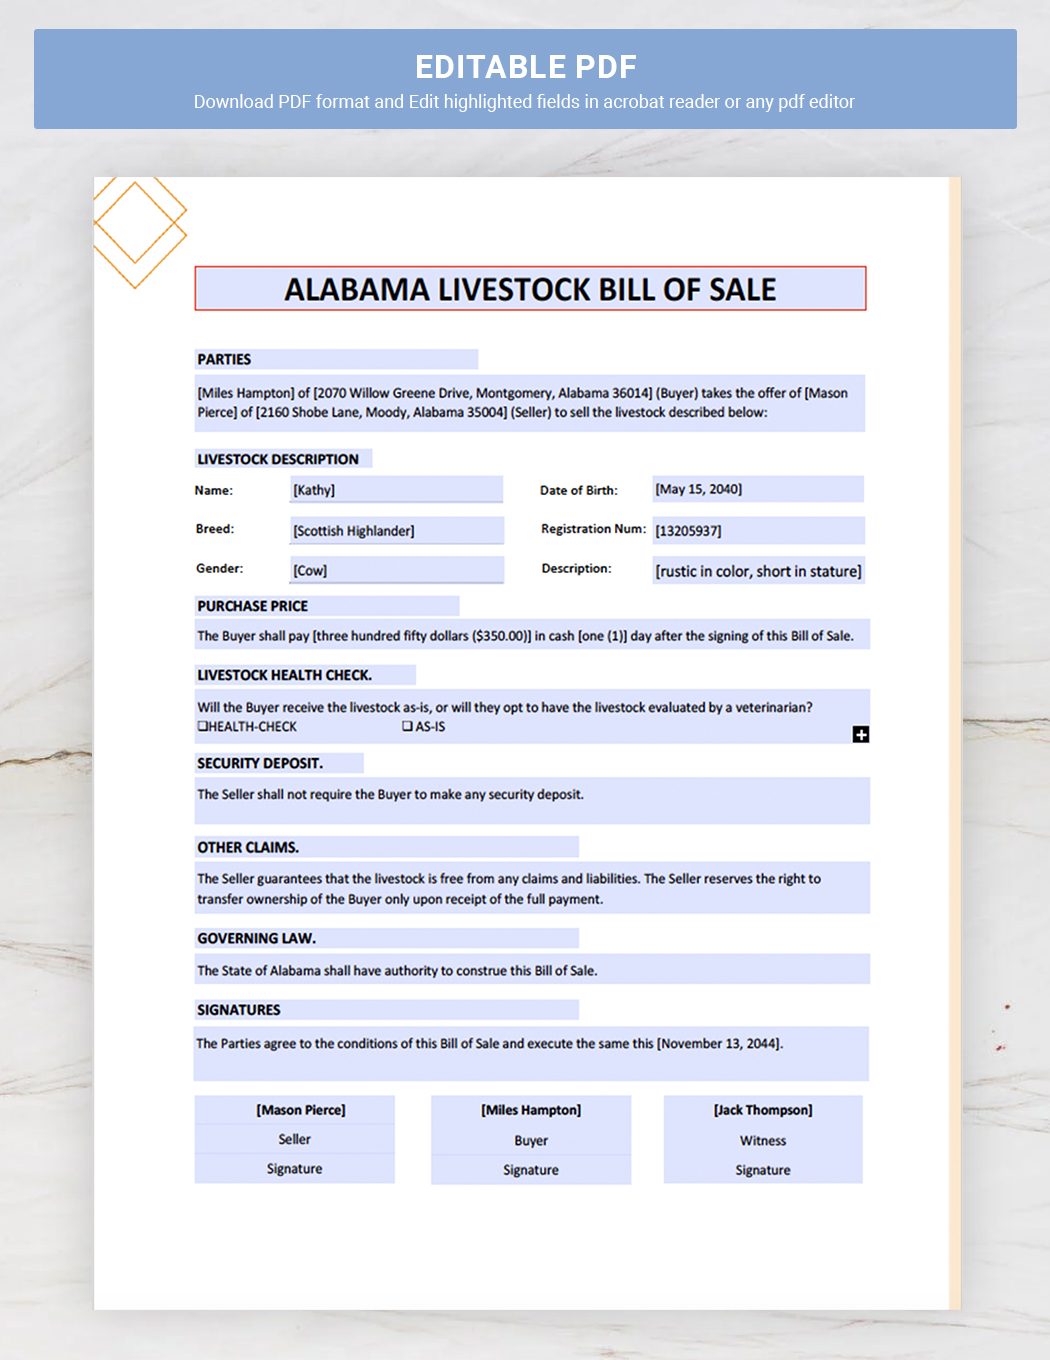 Alabama Livestock Bill of Sale